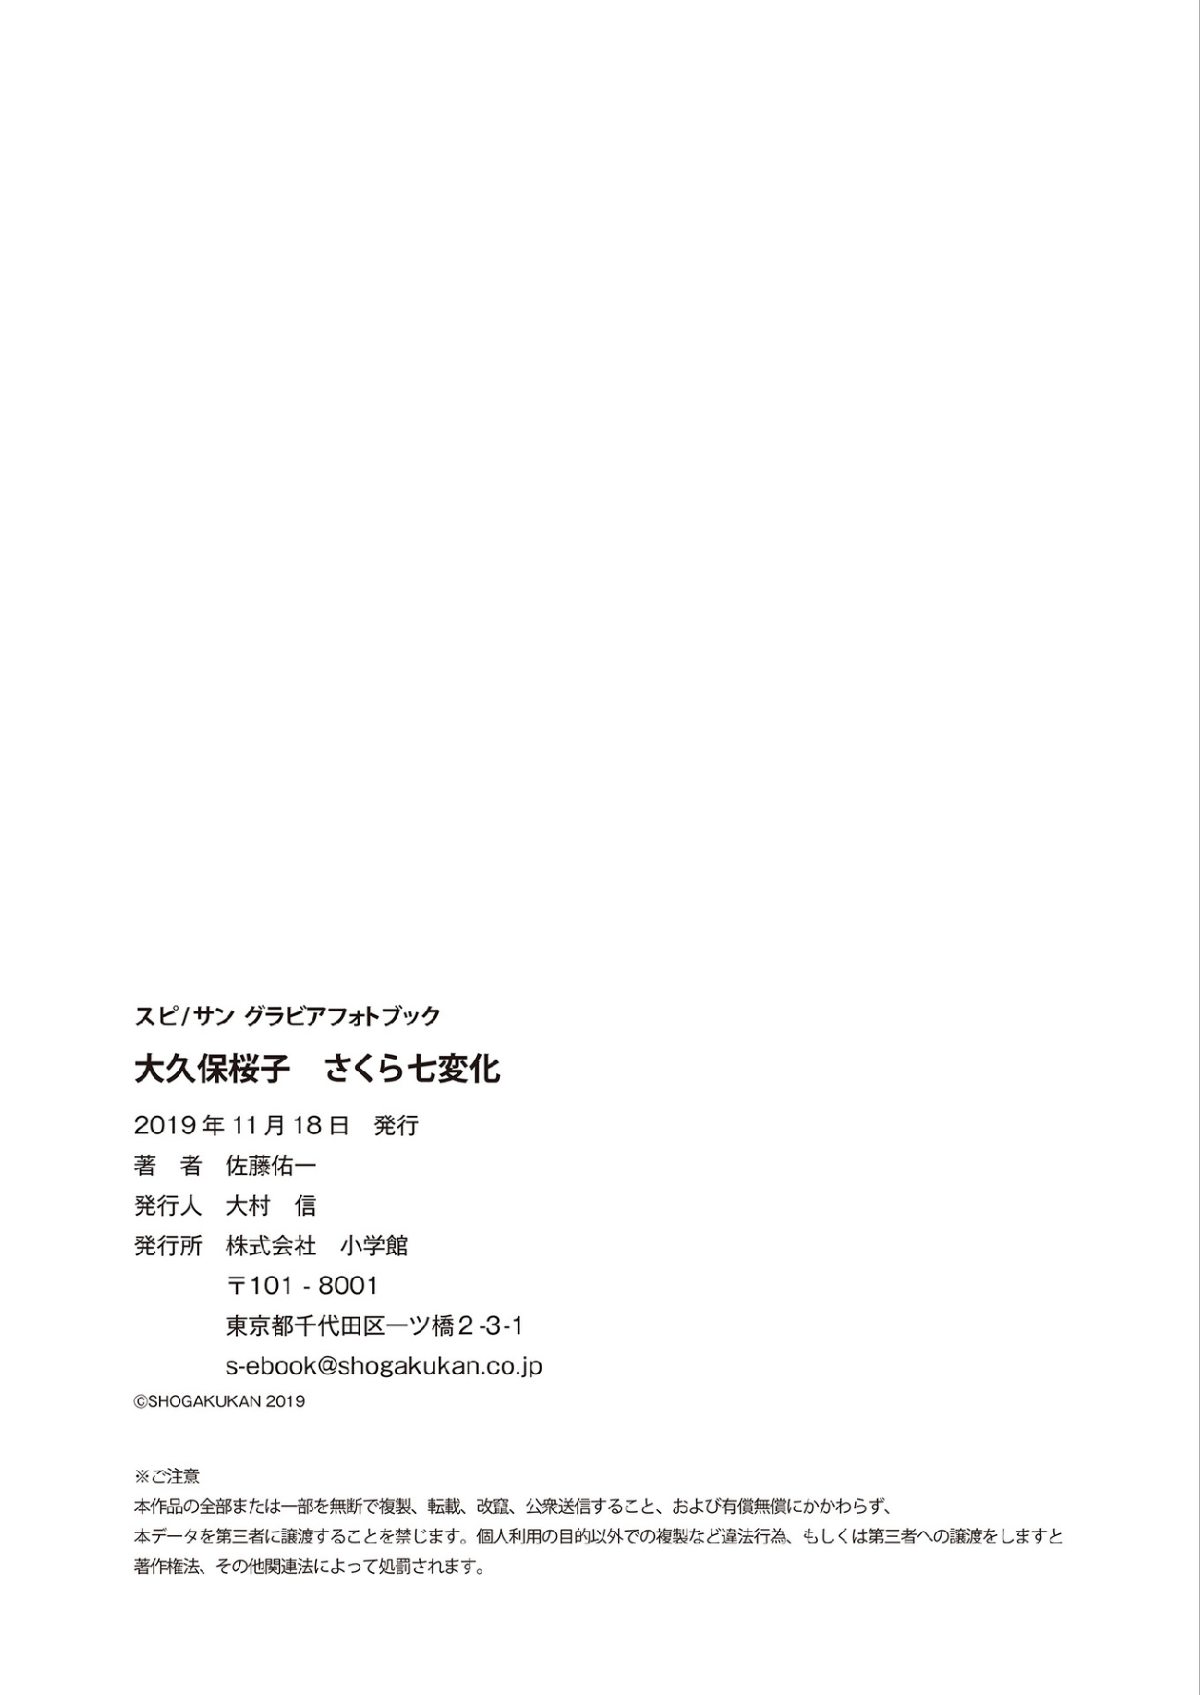 Photobook 2019 11 18 Sakurako Okubo 大久保桜子 Sakura Seven changes さくら七変化 0043 6625735145.jpg